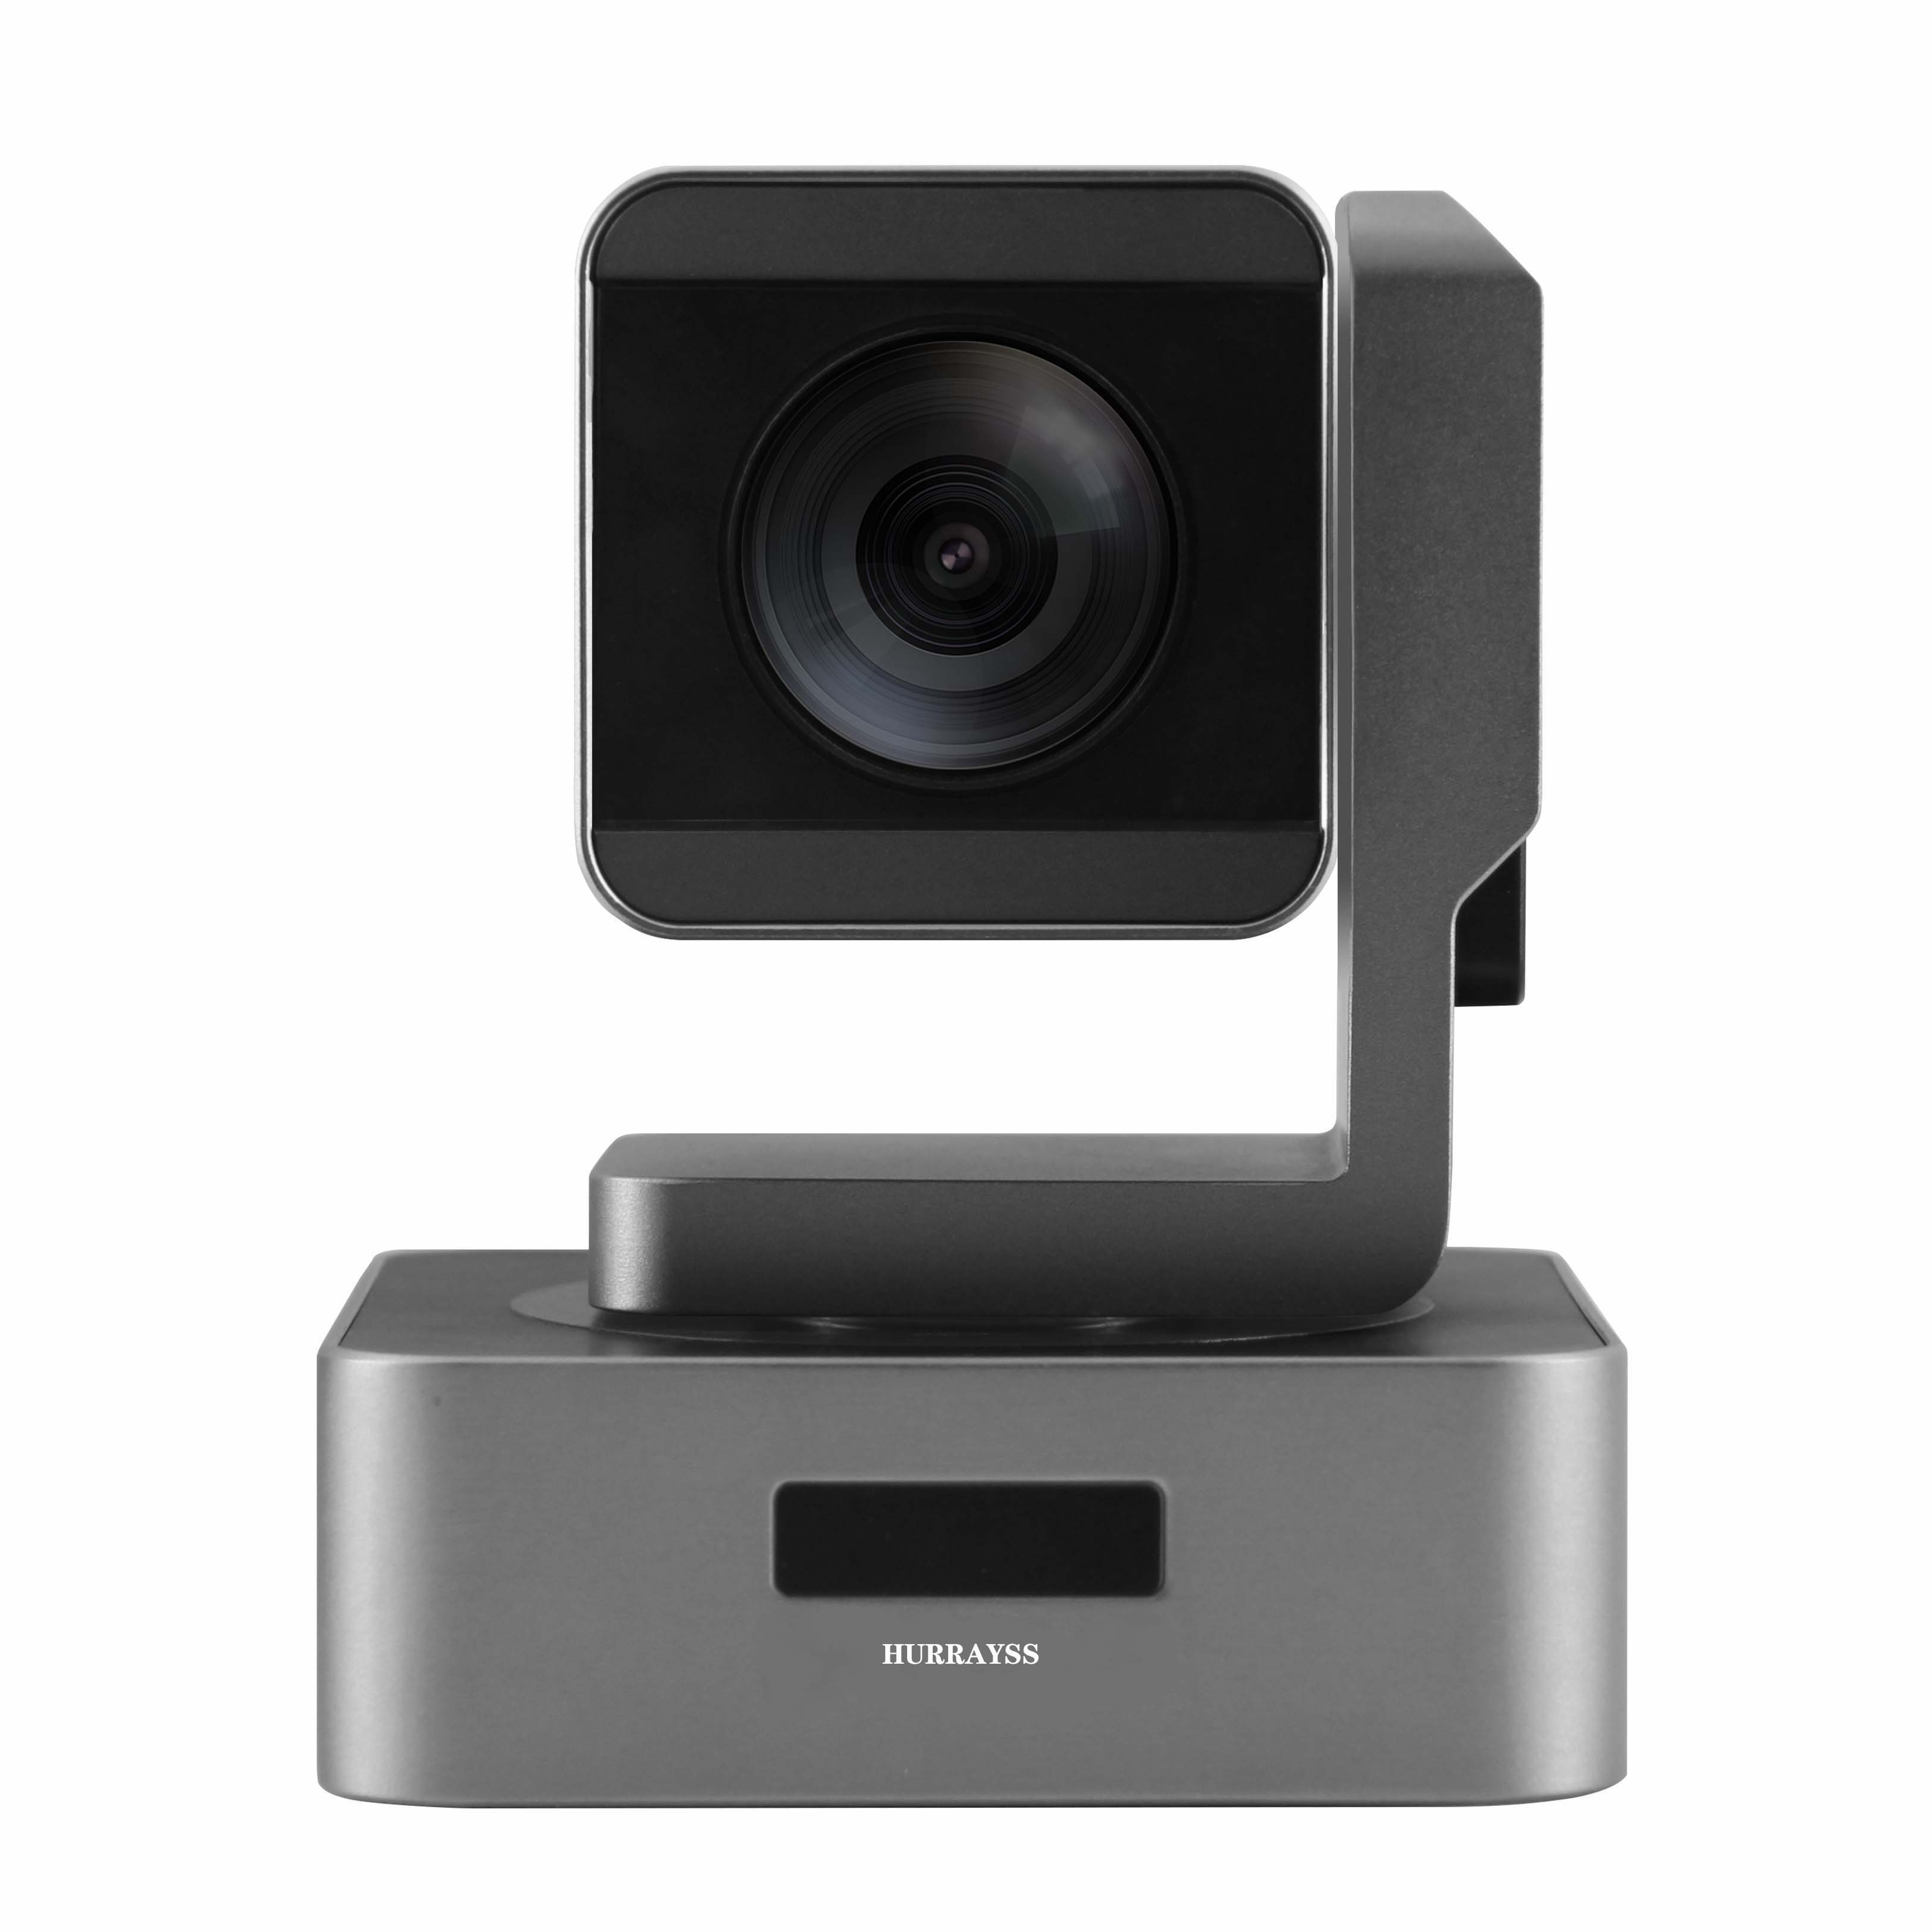 HURRAYSS/哈锐斯HD528 通讯型高清彩色摄像机视频会议摄像机